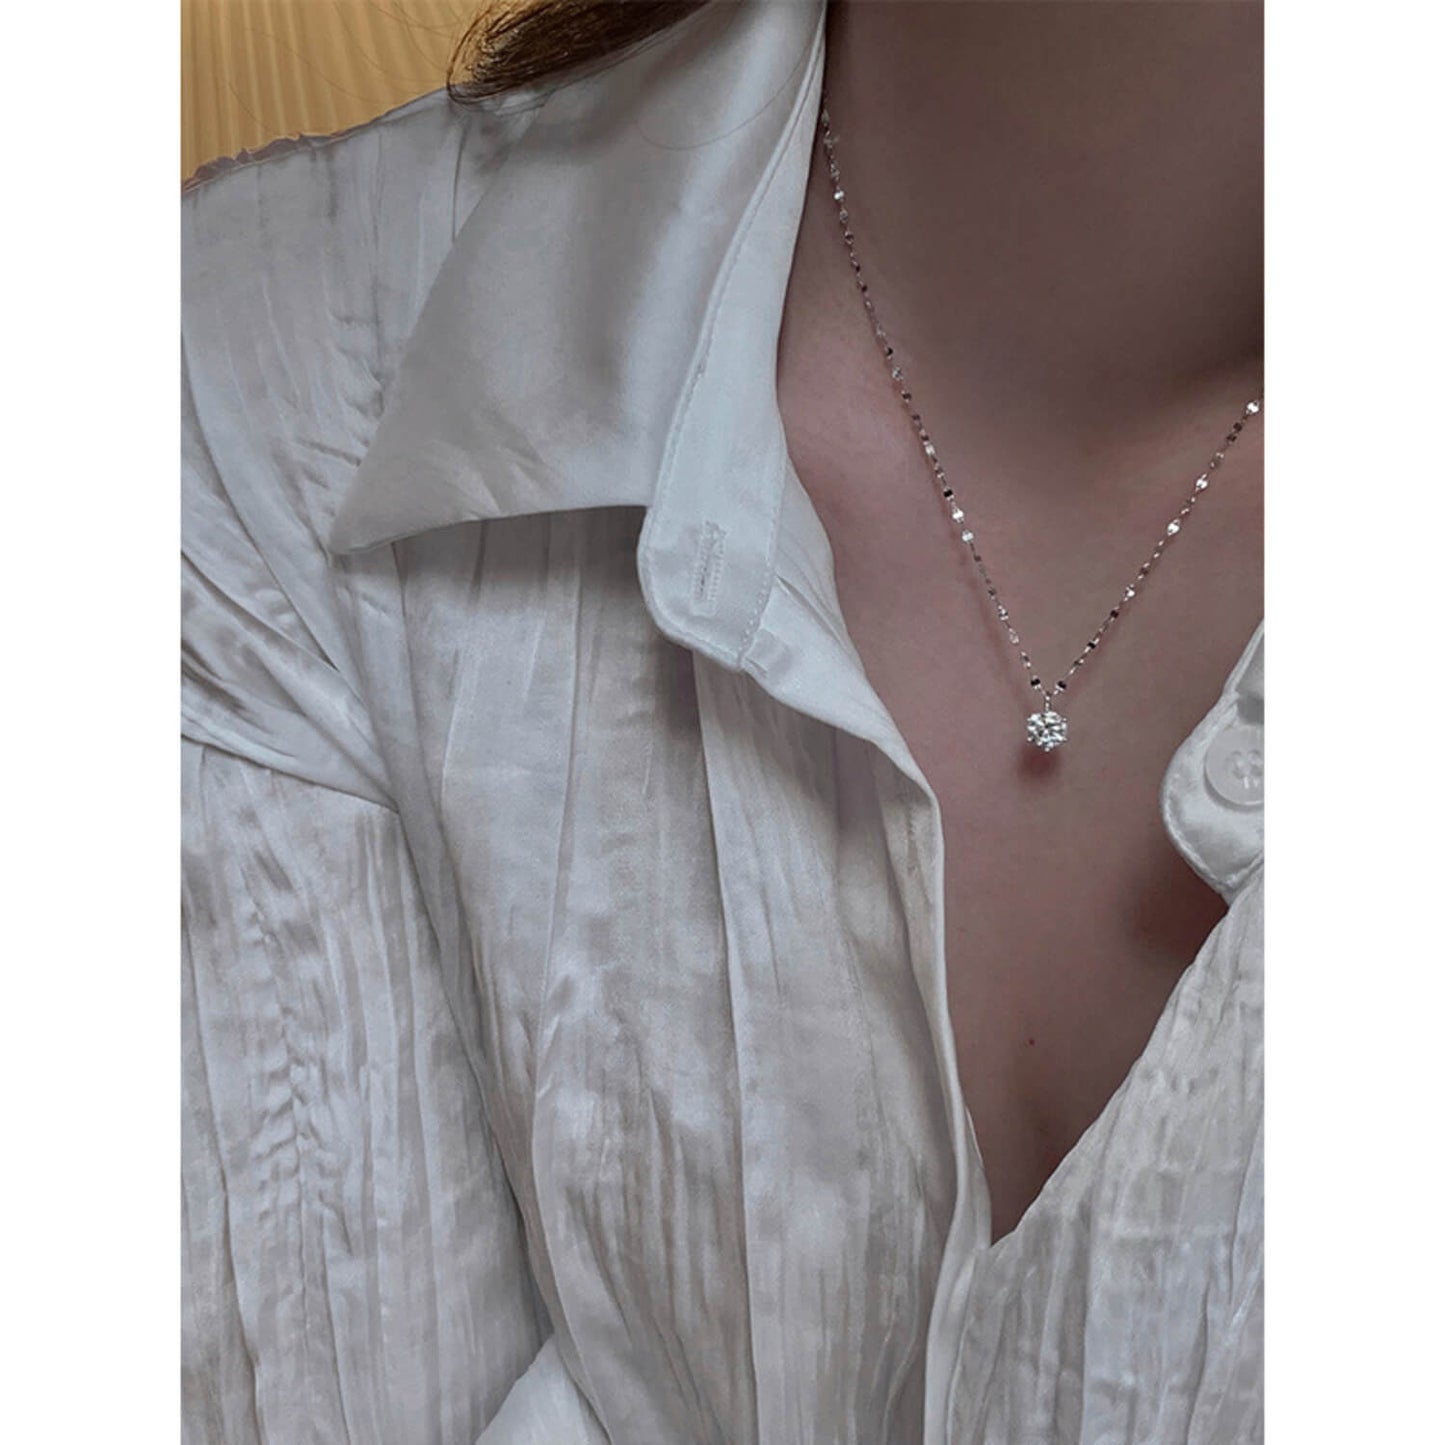 solitaire diamond pendant necklace